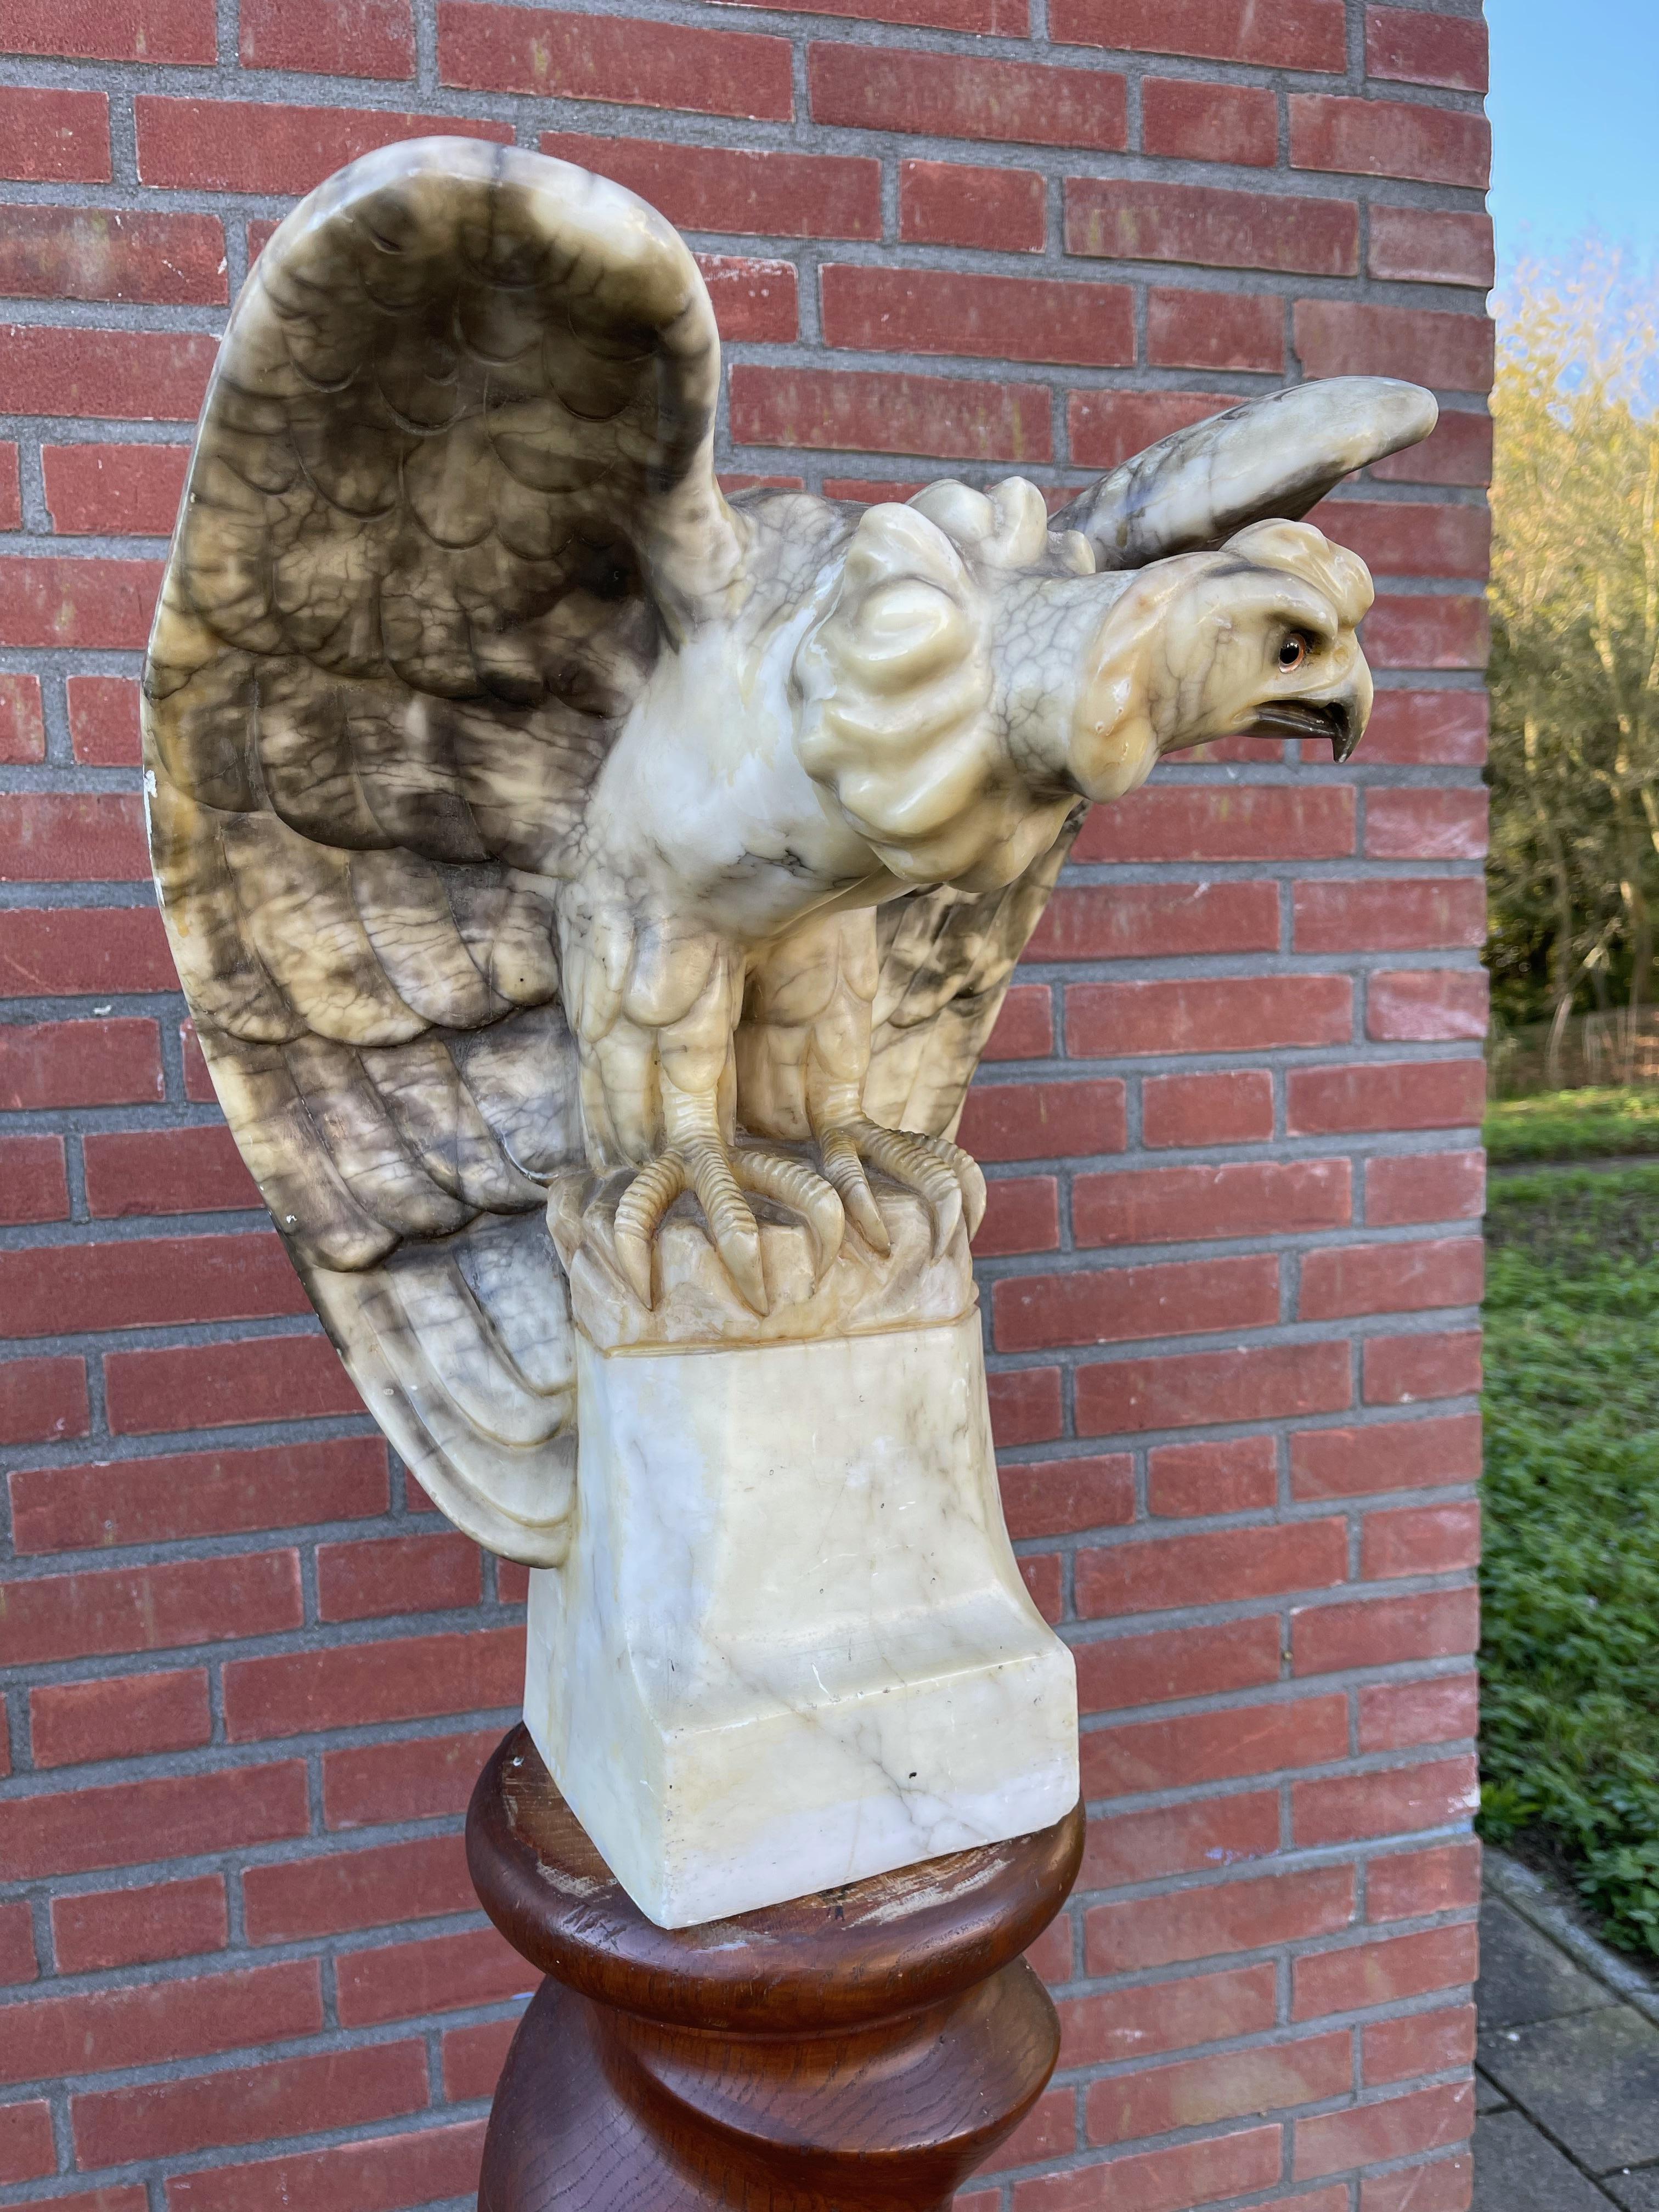 Prächtige Alabaster-Skulptur einer Harpyie, von der wir glauben, dass sie ein Adler ist.

Aus einem mineralischen Gestein wie Alabaster etwas auch nur annähernd Realistisches zu schnitzen, ist für fast alle Menschen auf der Welt extrem schwierig,